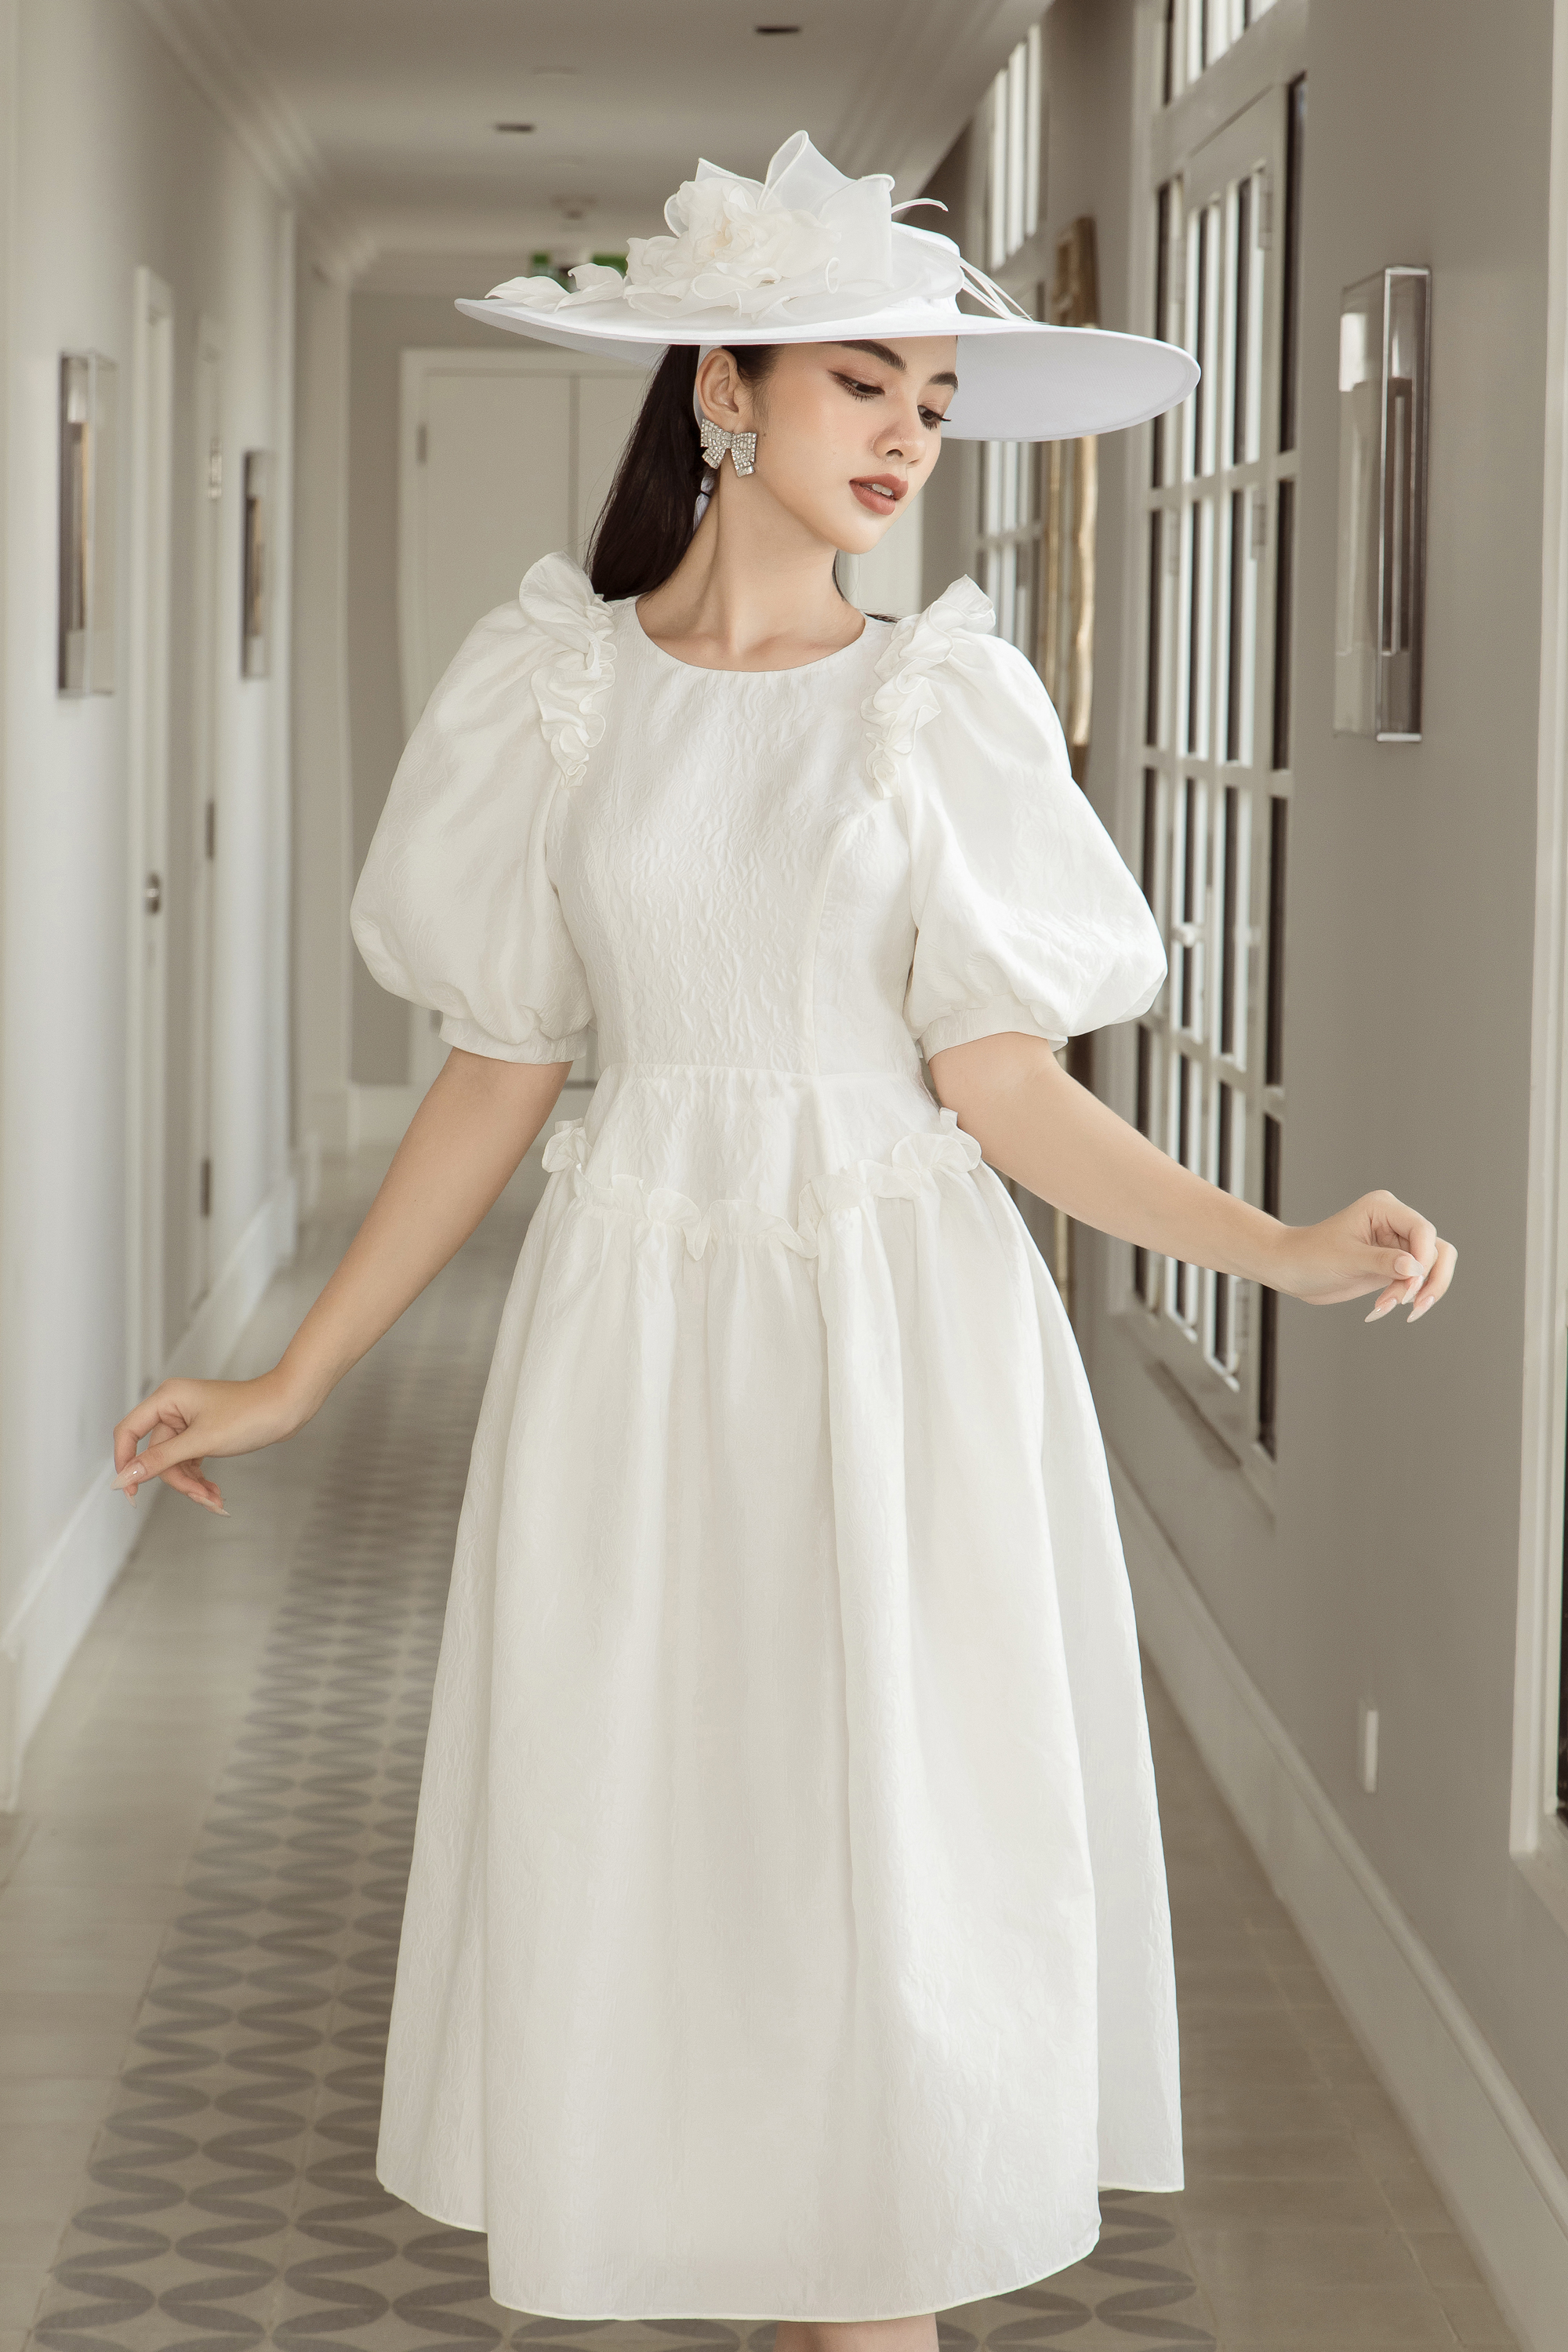 Khác với các gam màu khác, sắc trắng luôn có sức sống mãnh liệt trong thời trang và là hiện thân của vẻ đẹp không tuổi trong ngành. Trong năm nay, sải bước trên các thảm đỏ của loạt liên hoan phim, không ít người đẹp như Zendaya, Uma Thurman… cũng yêu thích diện sắc trắng.